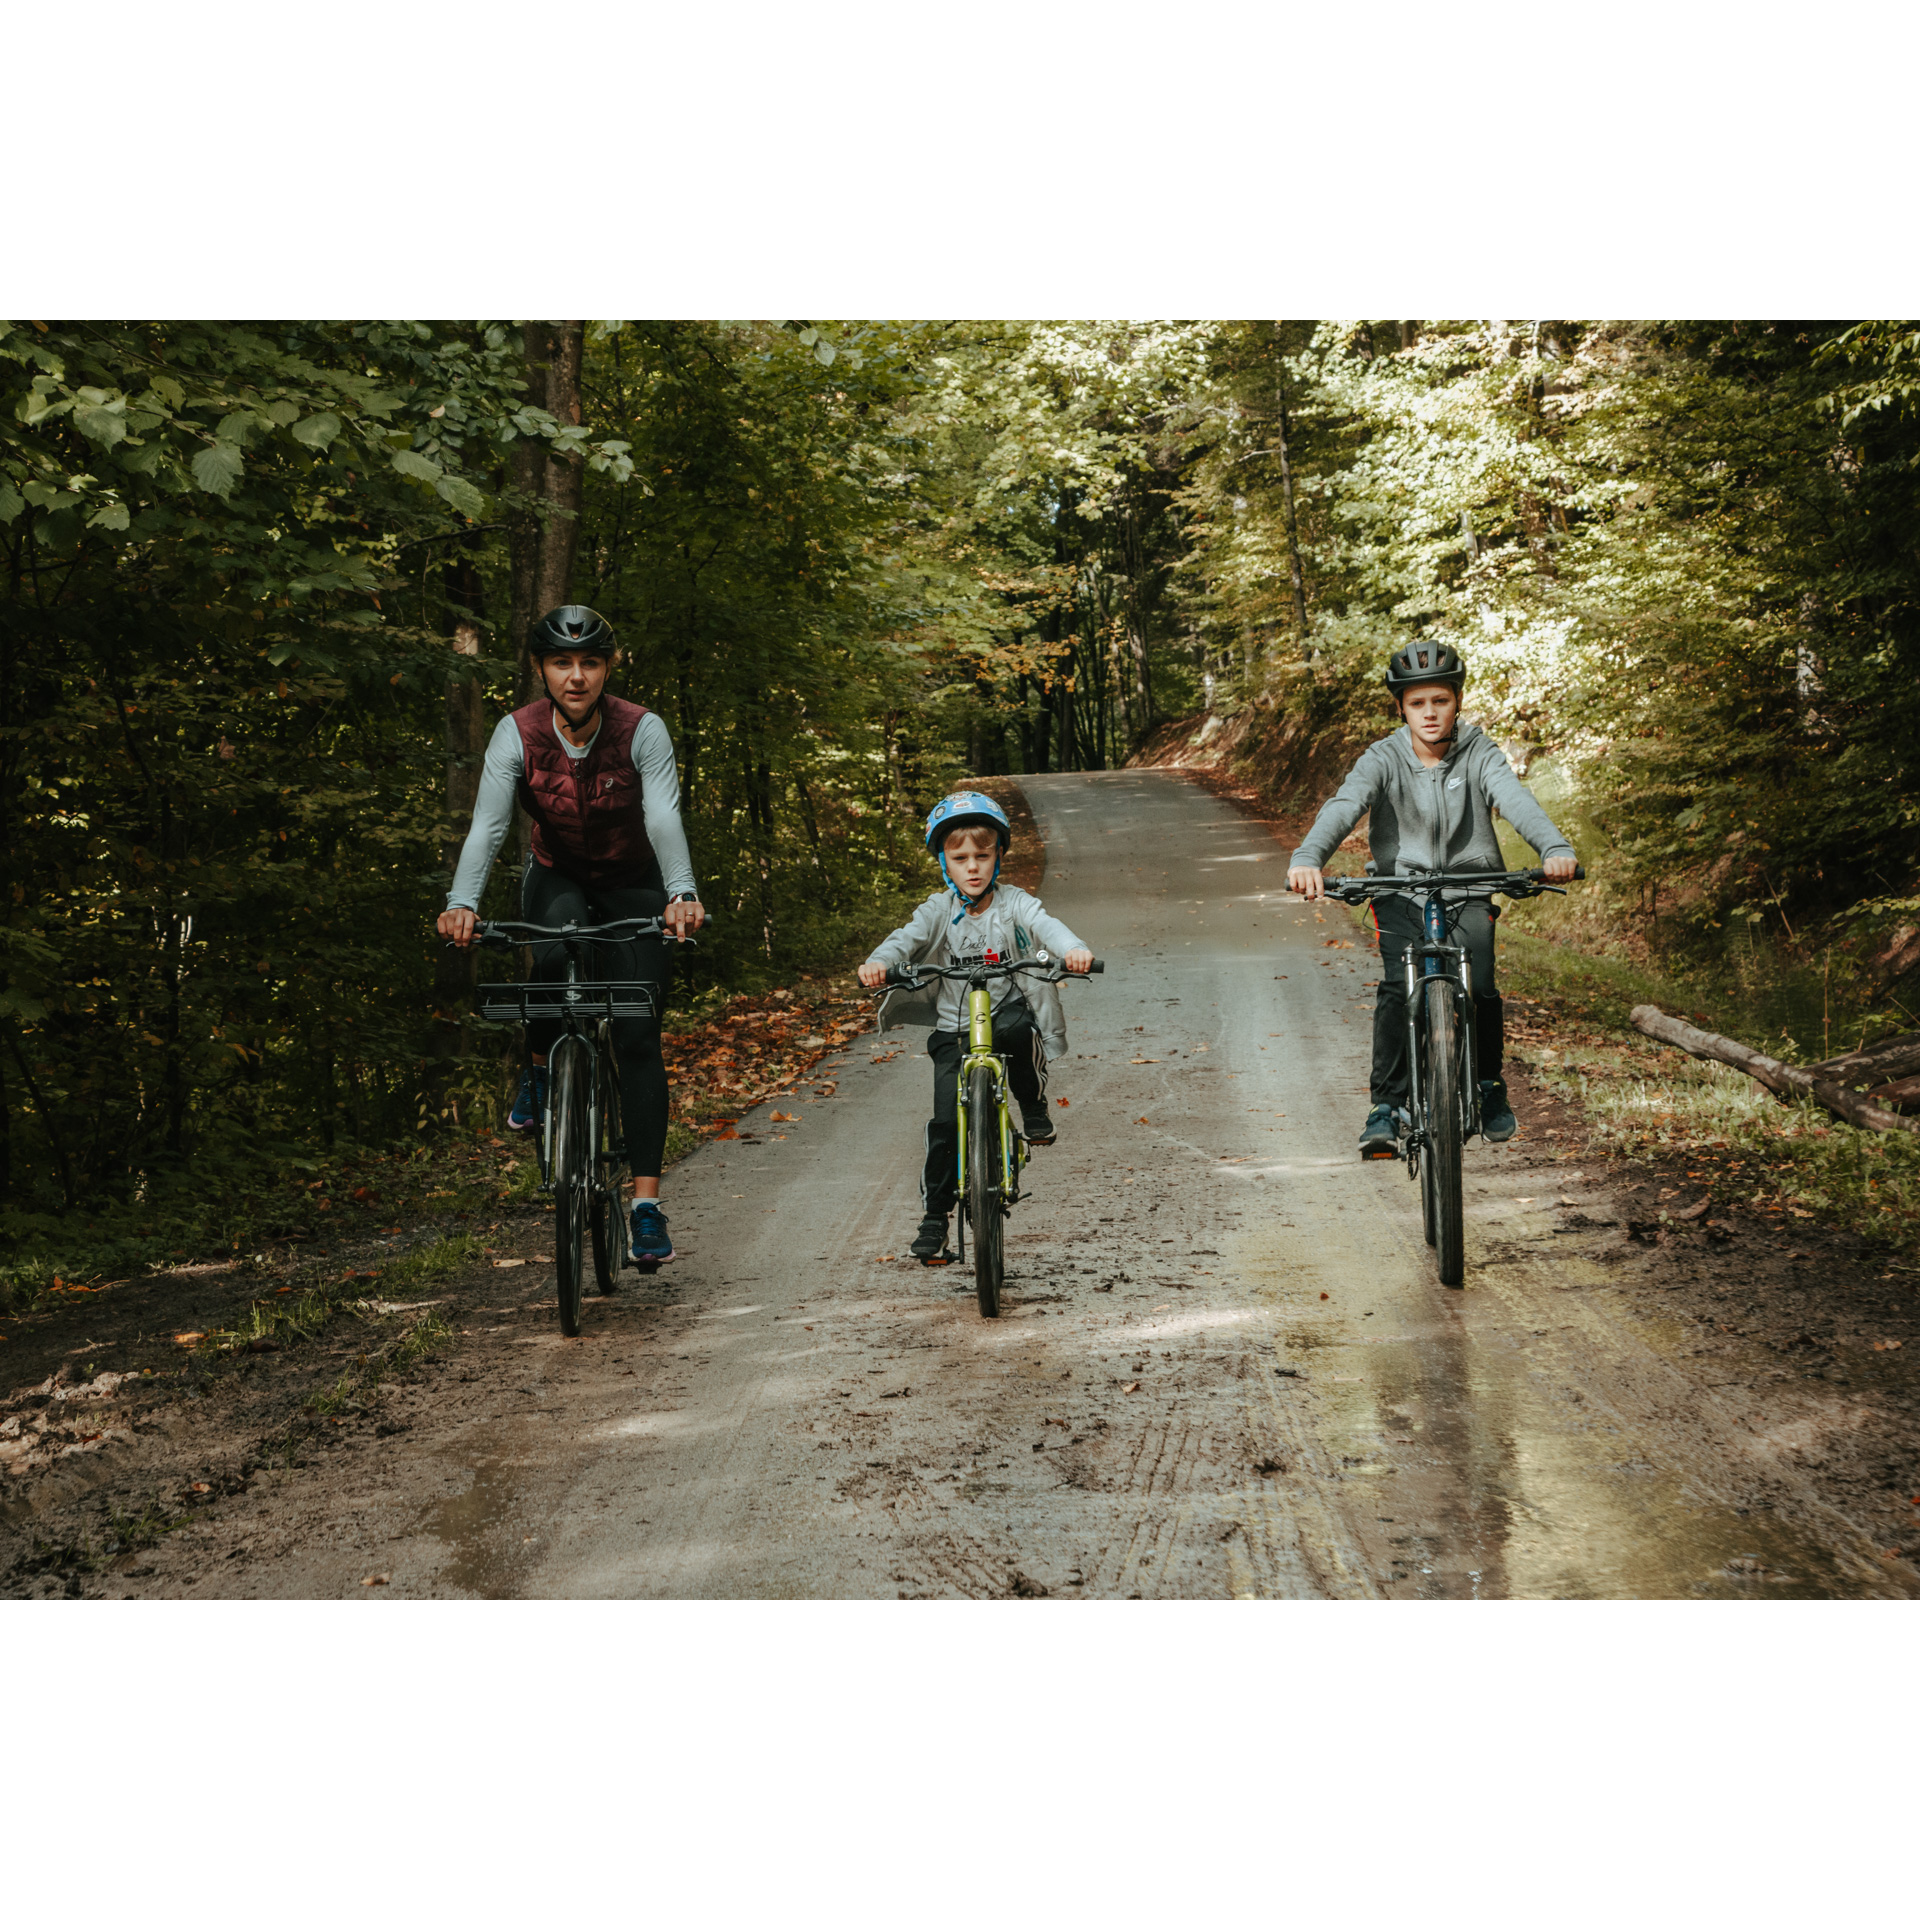 Kobieta i dwójka chłopców w kaskach jadący na rowerach leśną, piaszczystą drogą wśród zielonych drzew